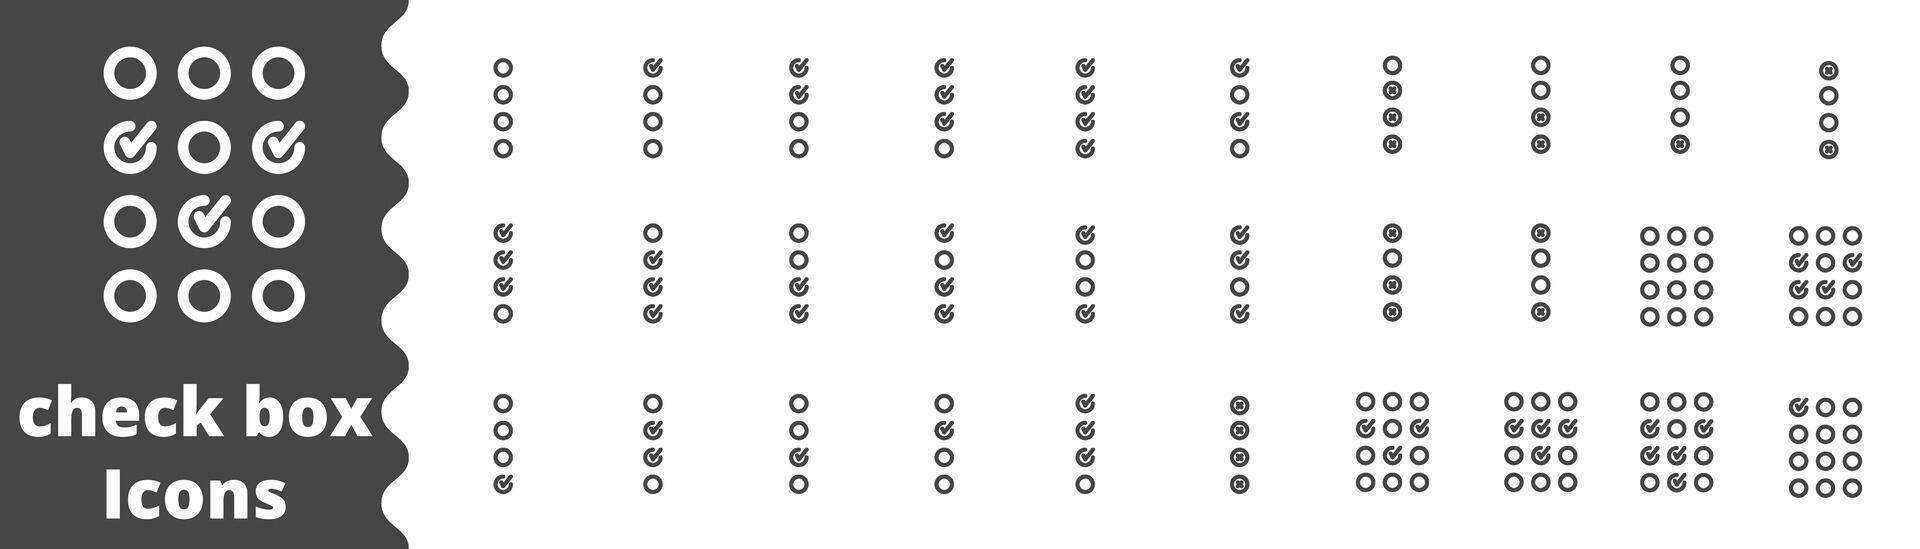 La Flèche icône vérifier boîte ensemble , diagramme, cible, cercle, élément, vecteur